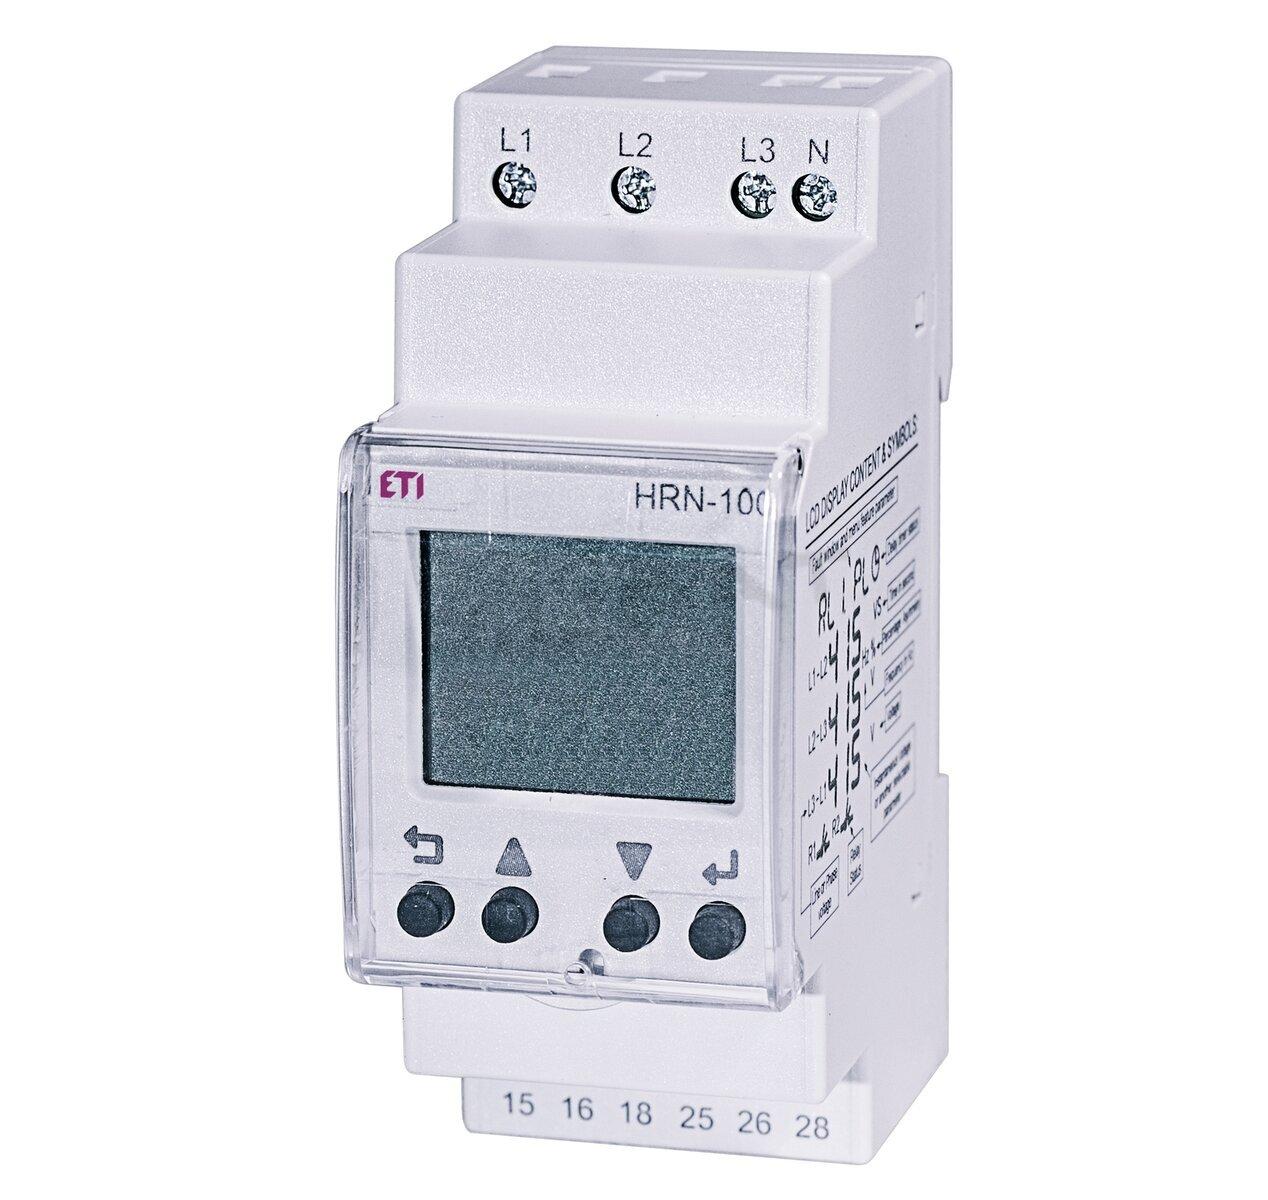 Rele HRN-100 monitorovacie rele napäťové s LCD displejom